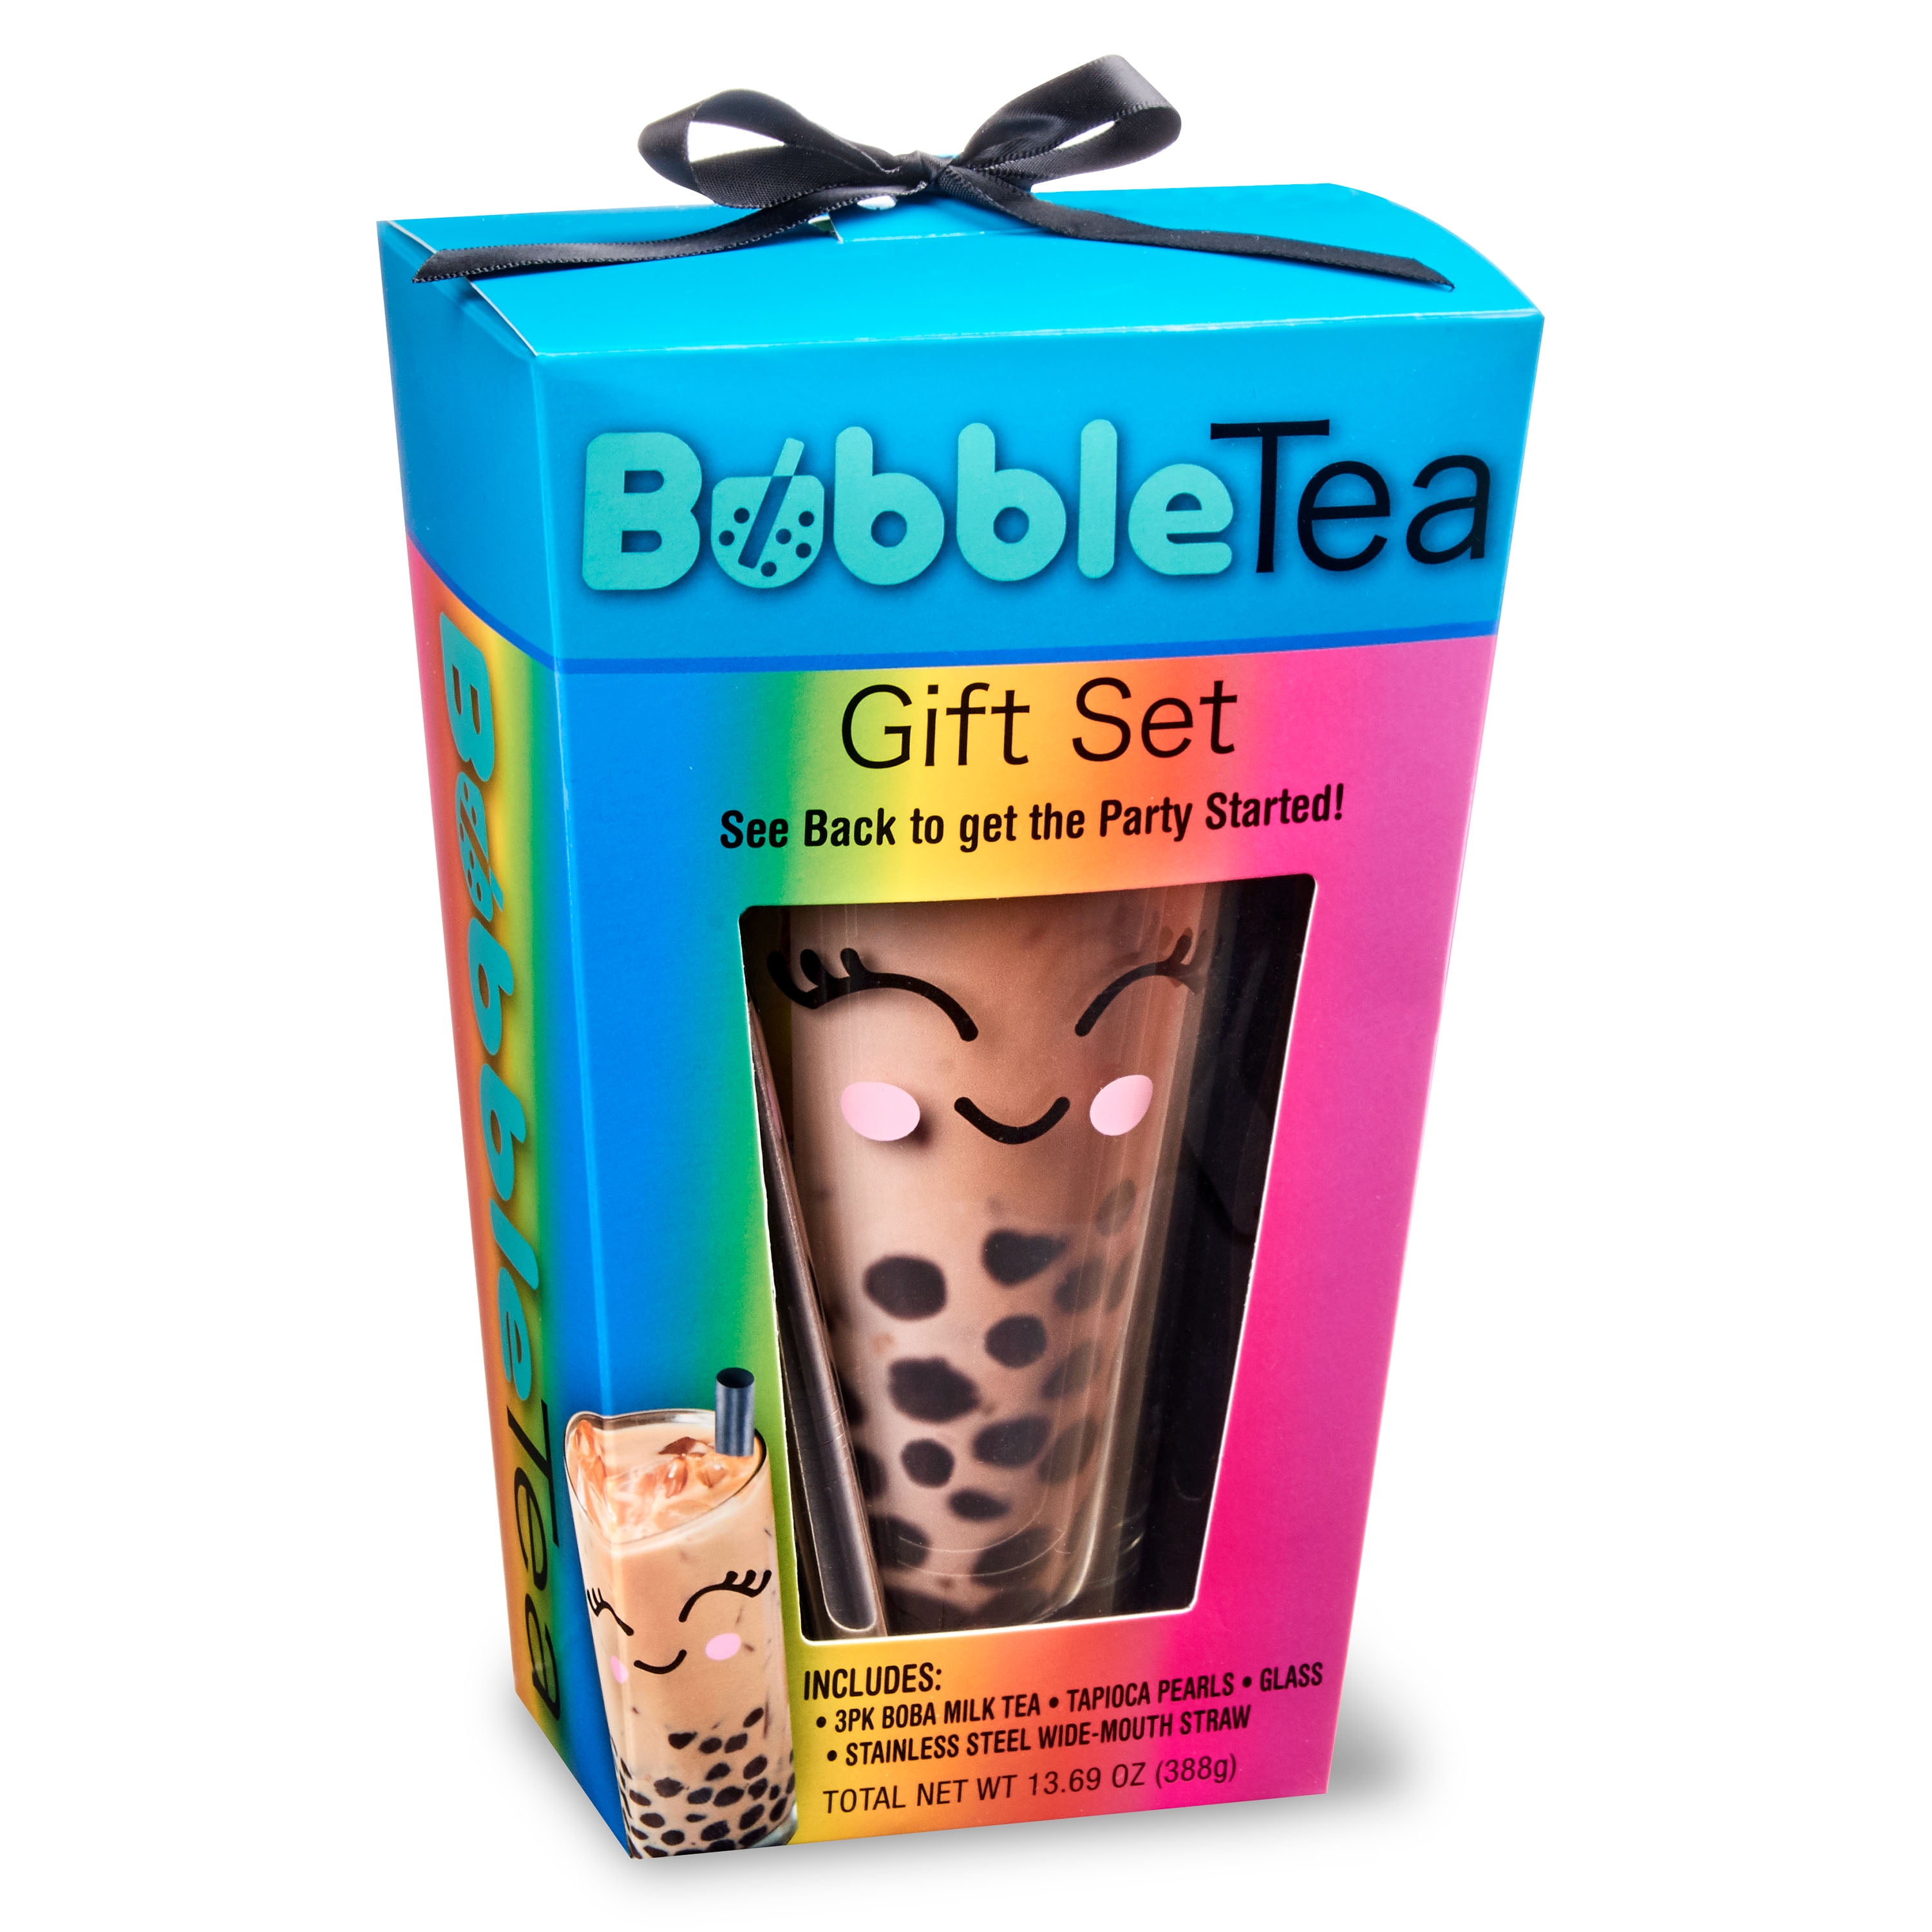 Walmart Bubble Tea Gift Set 